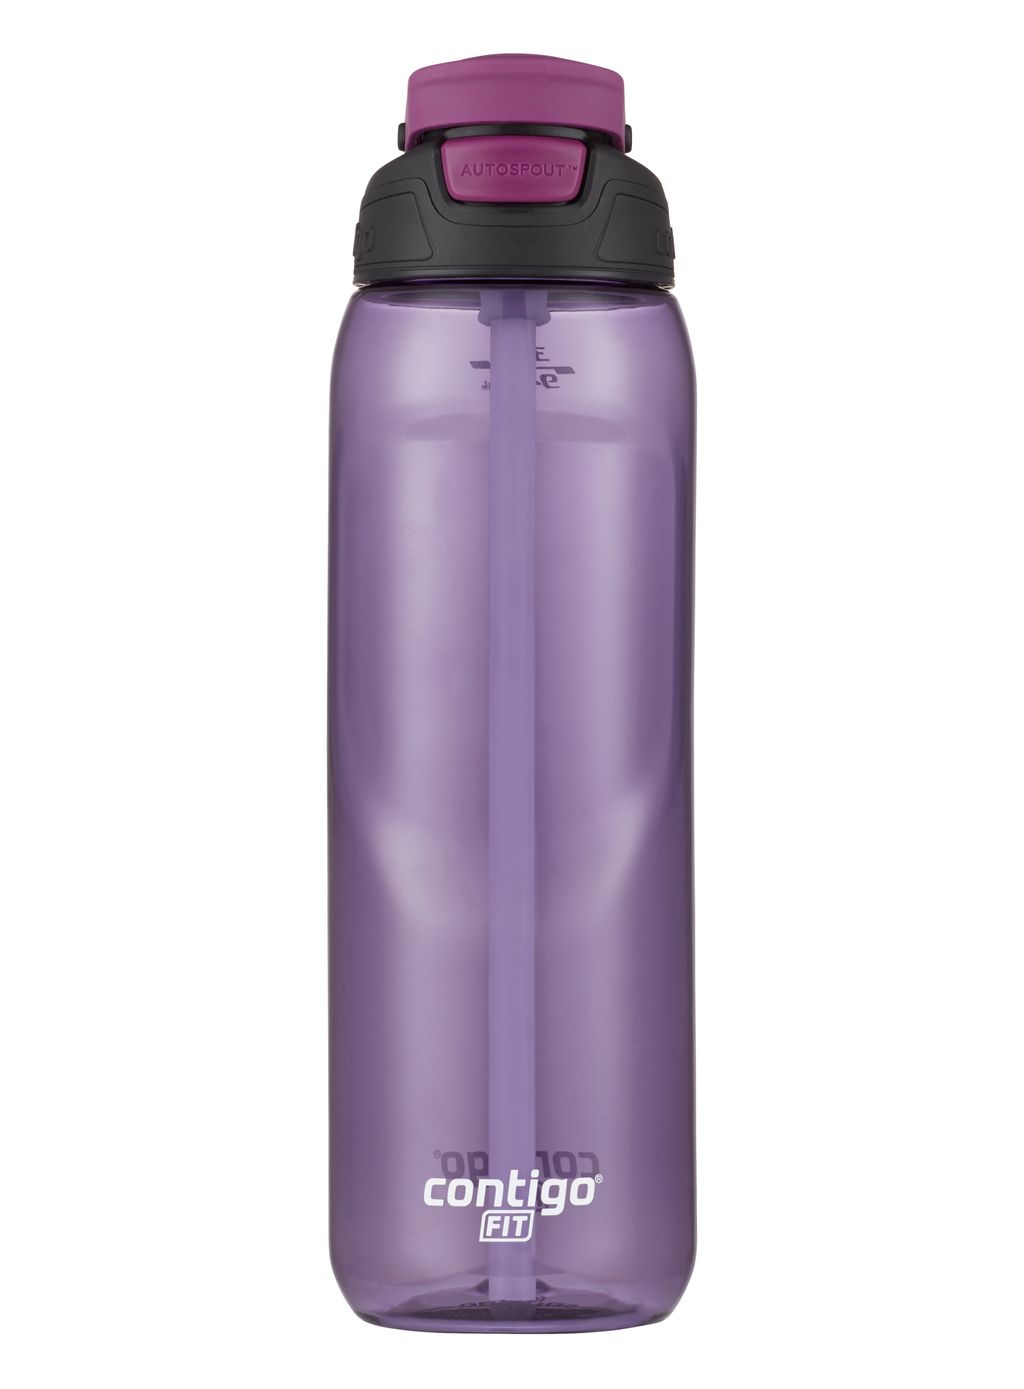 Copy of Contigo Autospout Fit Sports Bottle 946ml Grape